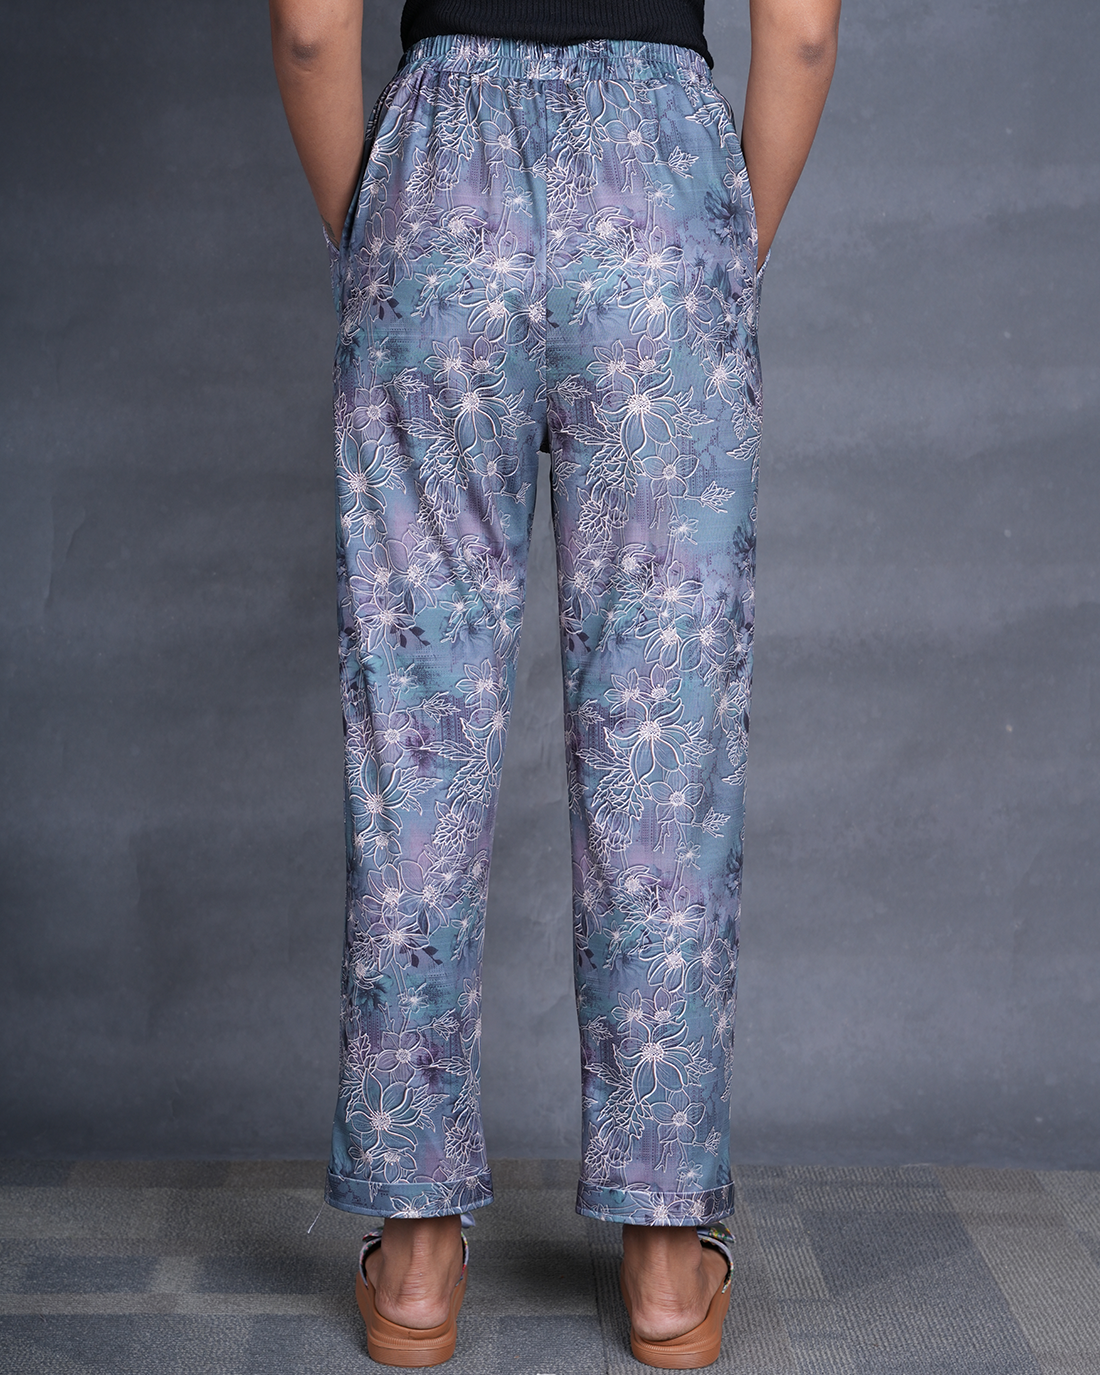 Magical Flowers Women Printed Pyjamas (Buy 2 Get 400 OFF)